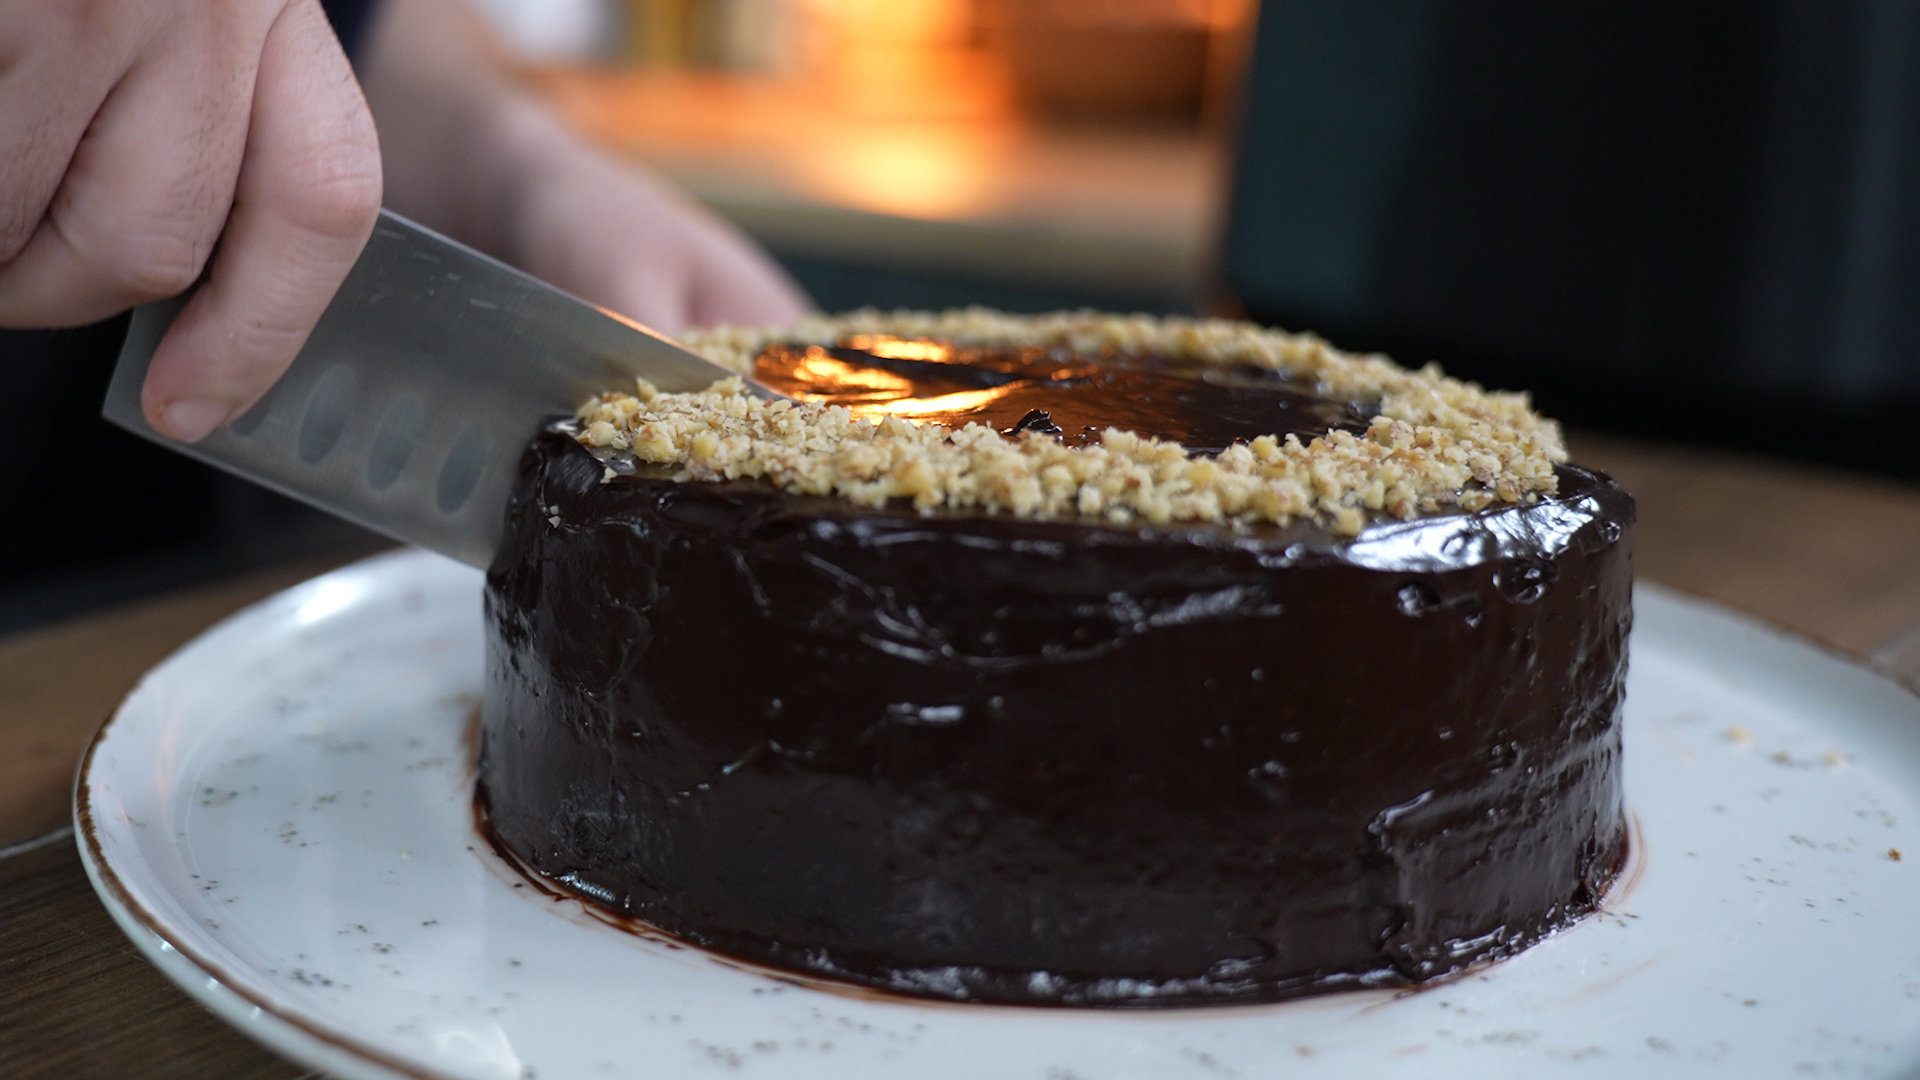 τούρτα-σοκολάτα-στο-air fryer-από-τον-Παναγιώτη Παπαδάκη-συνταγή-